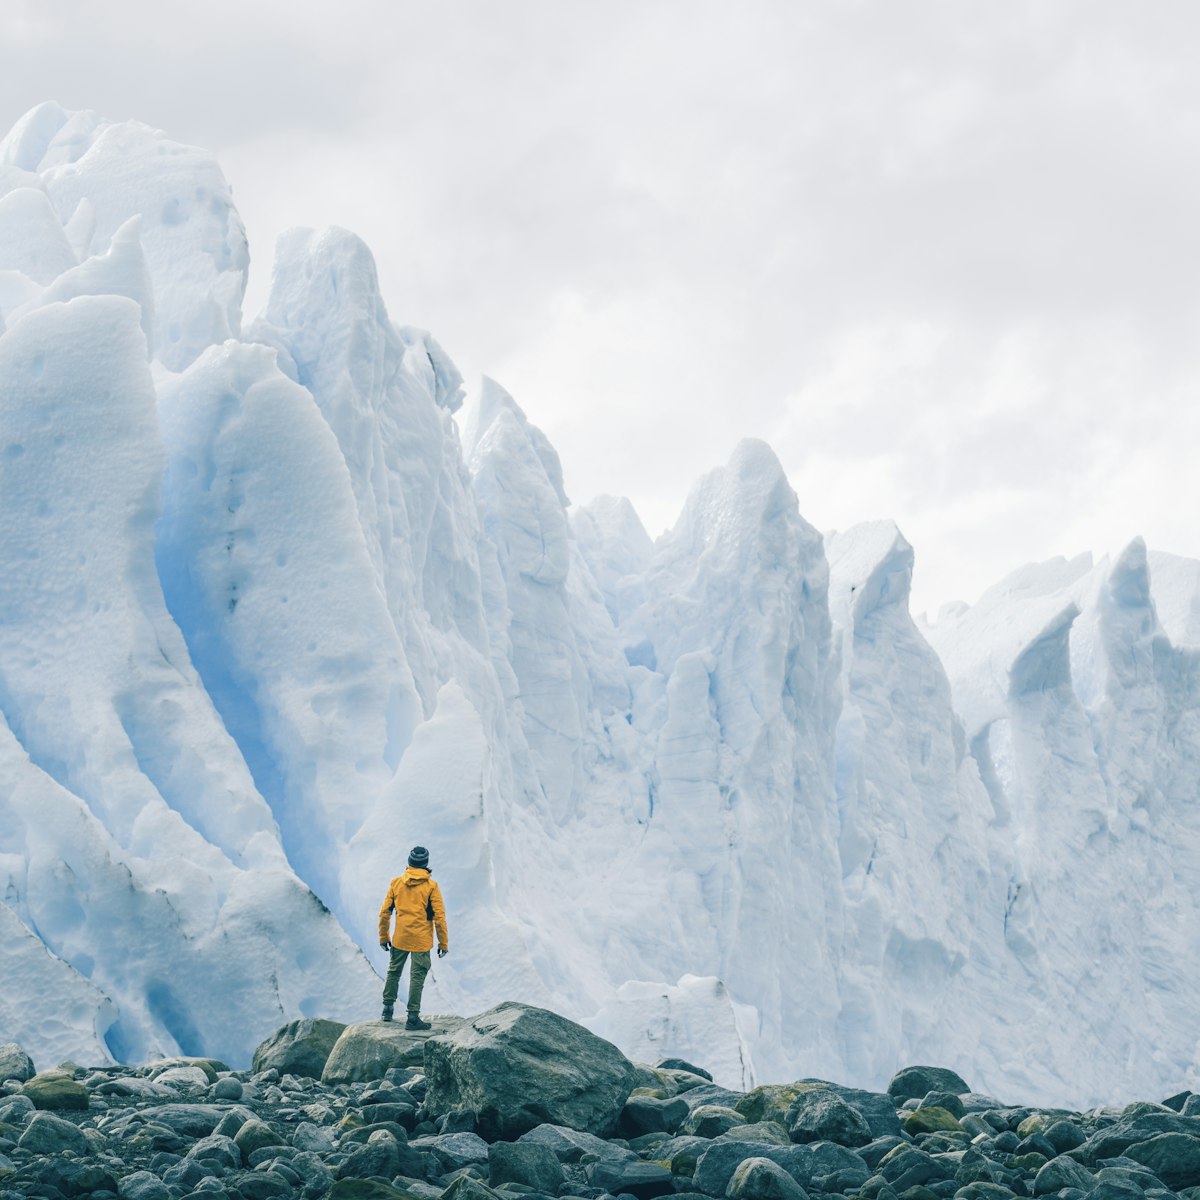 Man looking at the Perito Moreno glacier from the bottom.